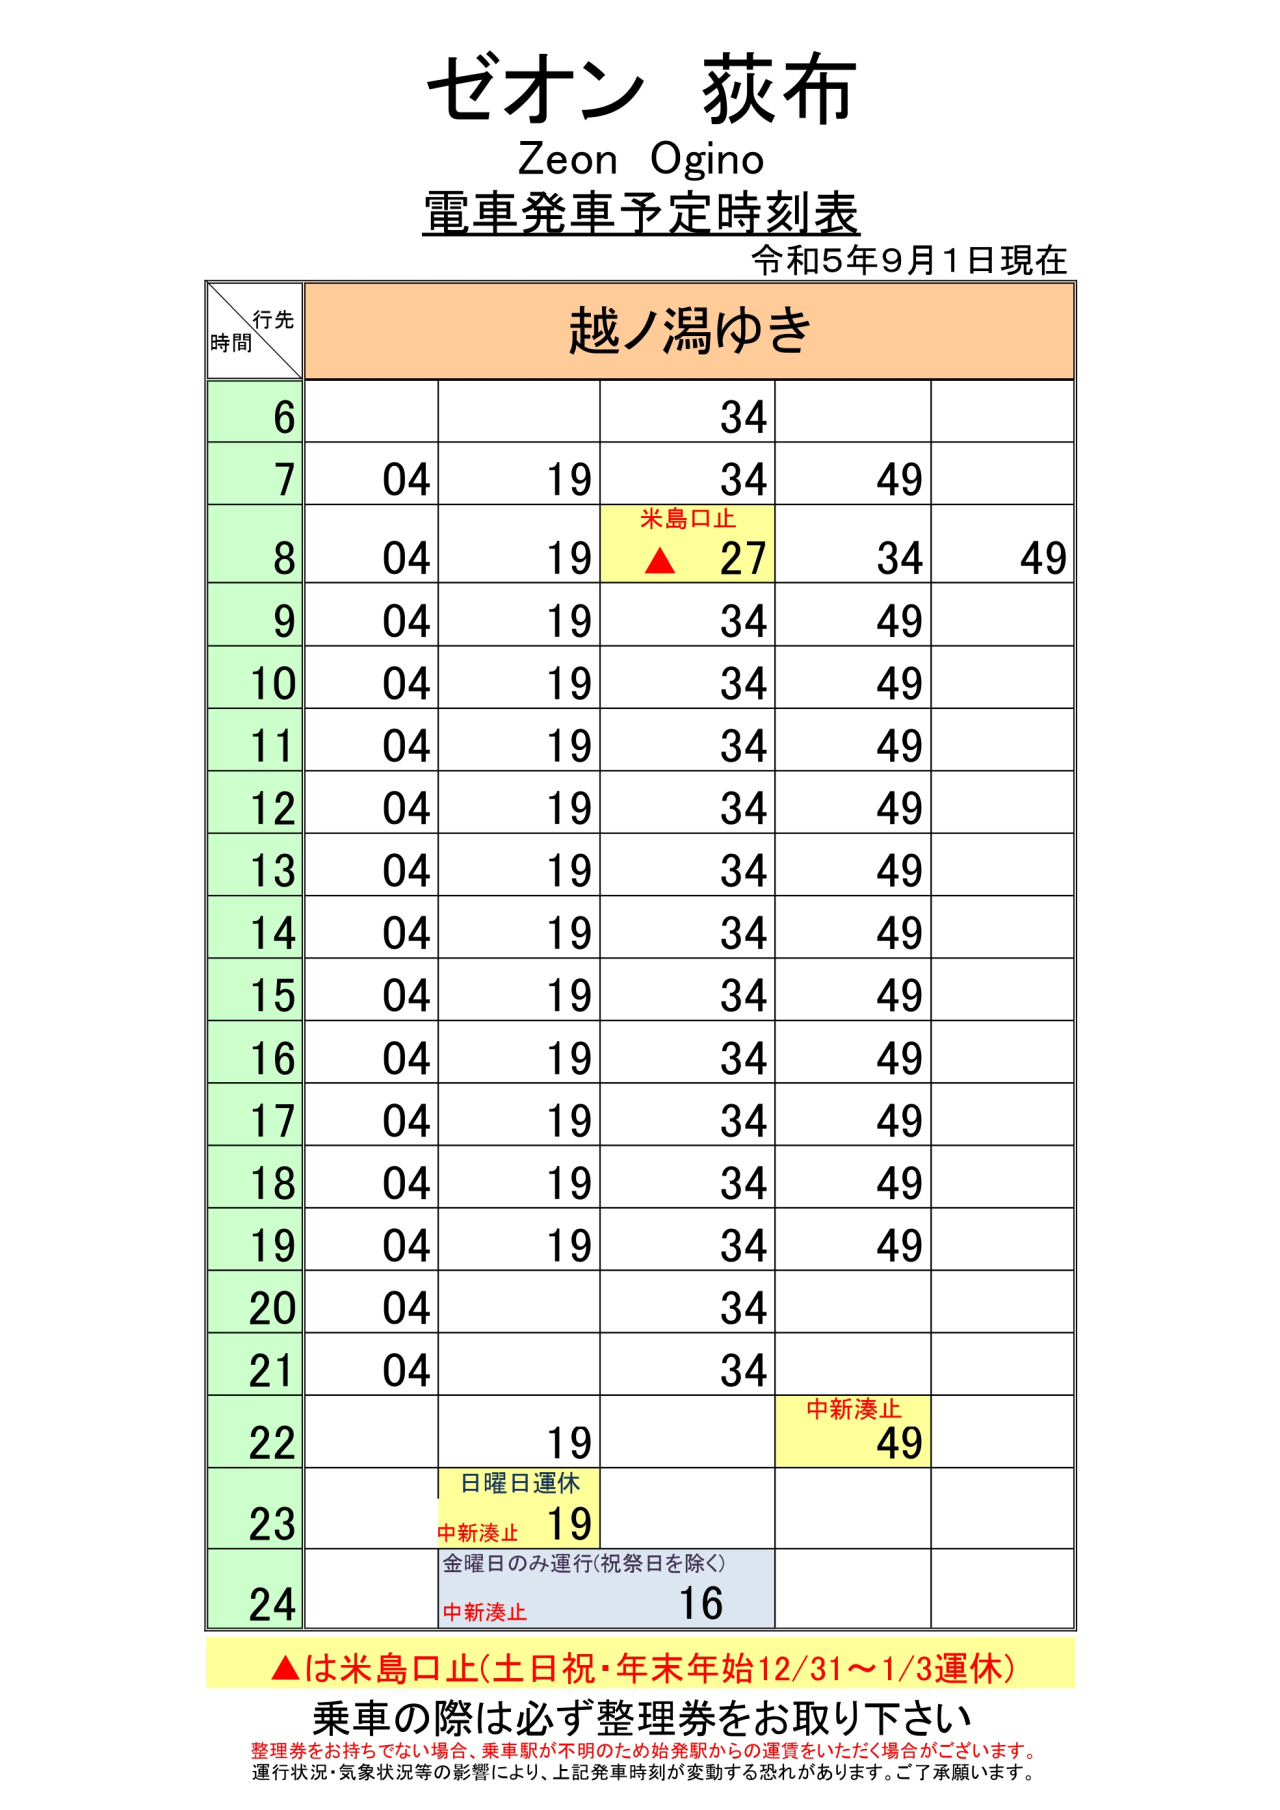 最新5.5.1改正各駅時刻表(全駅)_page-0001 (2)